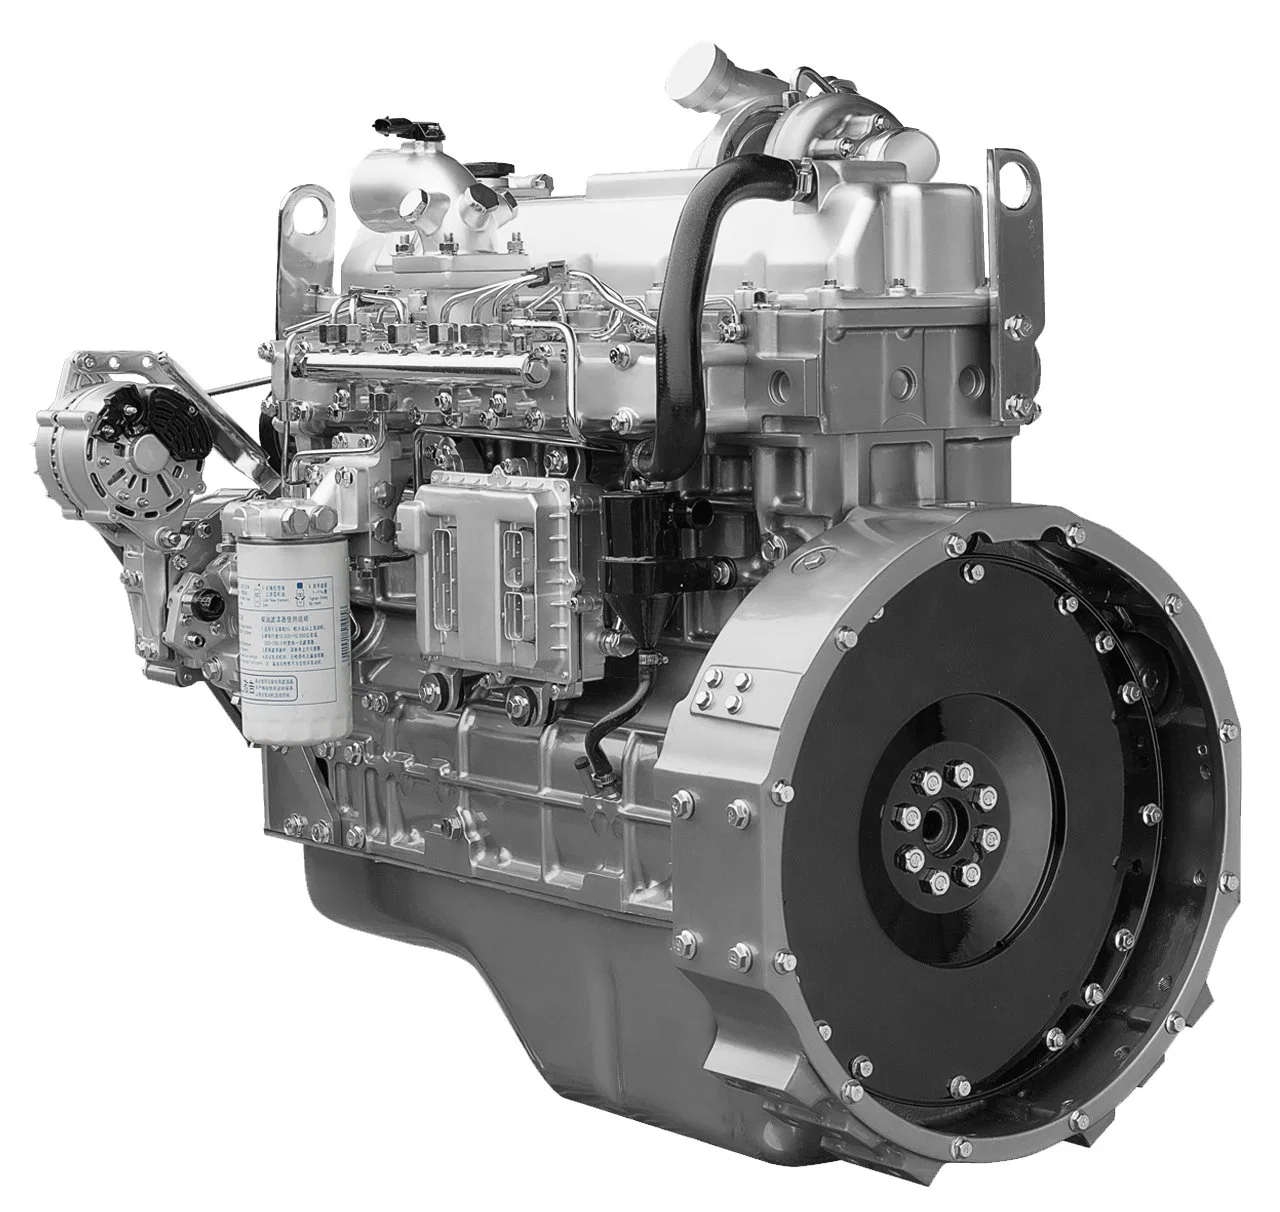 إمداد المصنع بمحرك ديزل تقليدي يفصله Yc6a Euro 5 انبعاثات ذو أداء جيد واقتصادي وموثوقية عالية